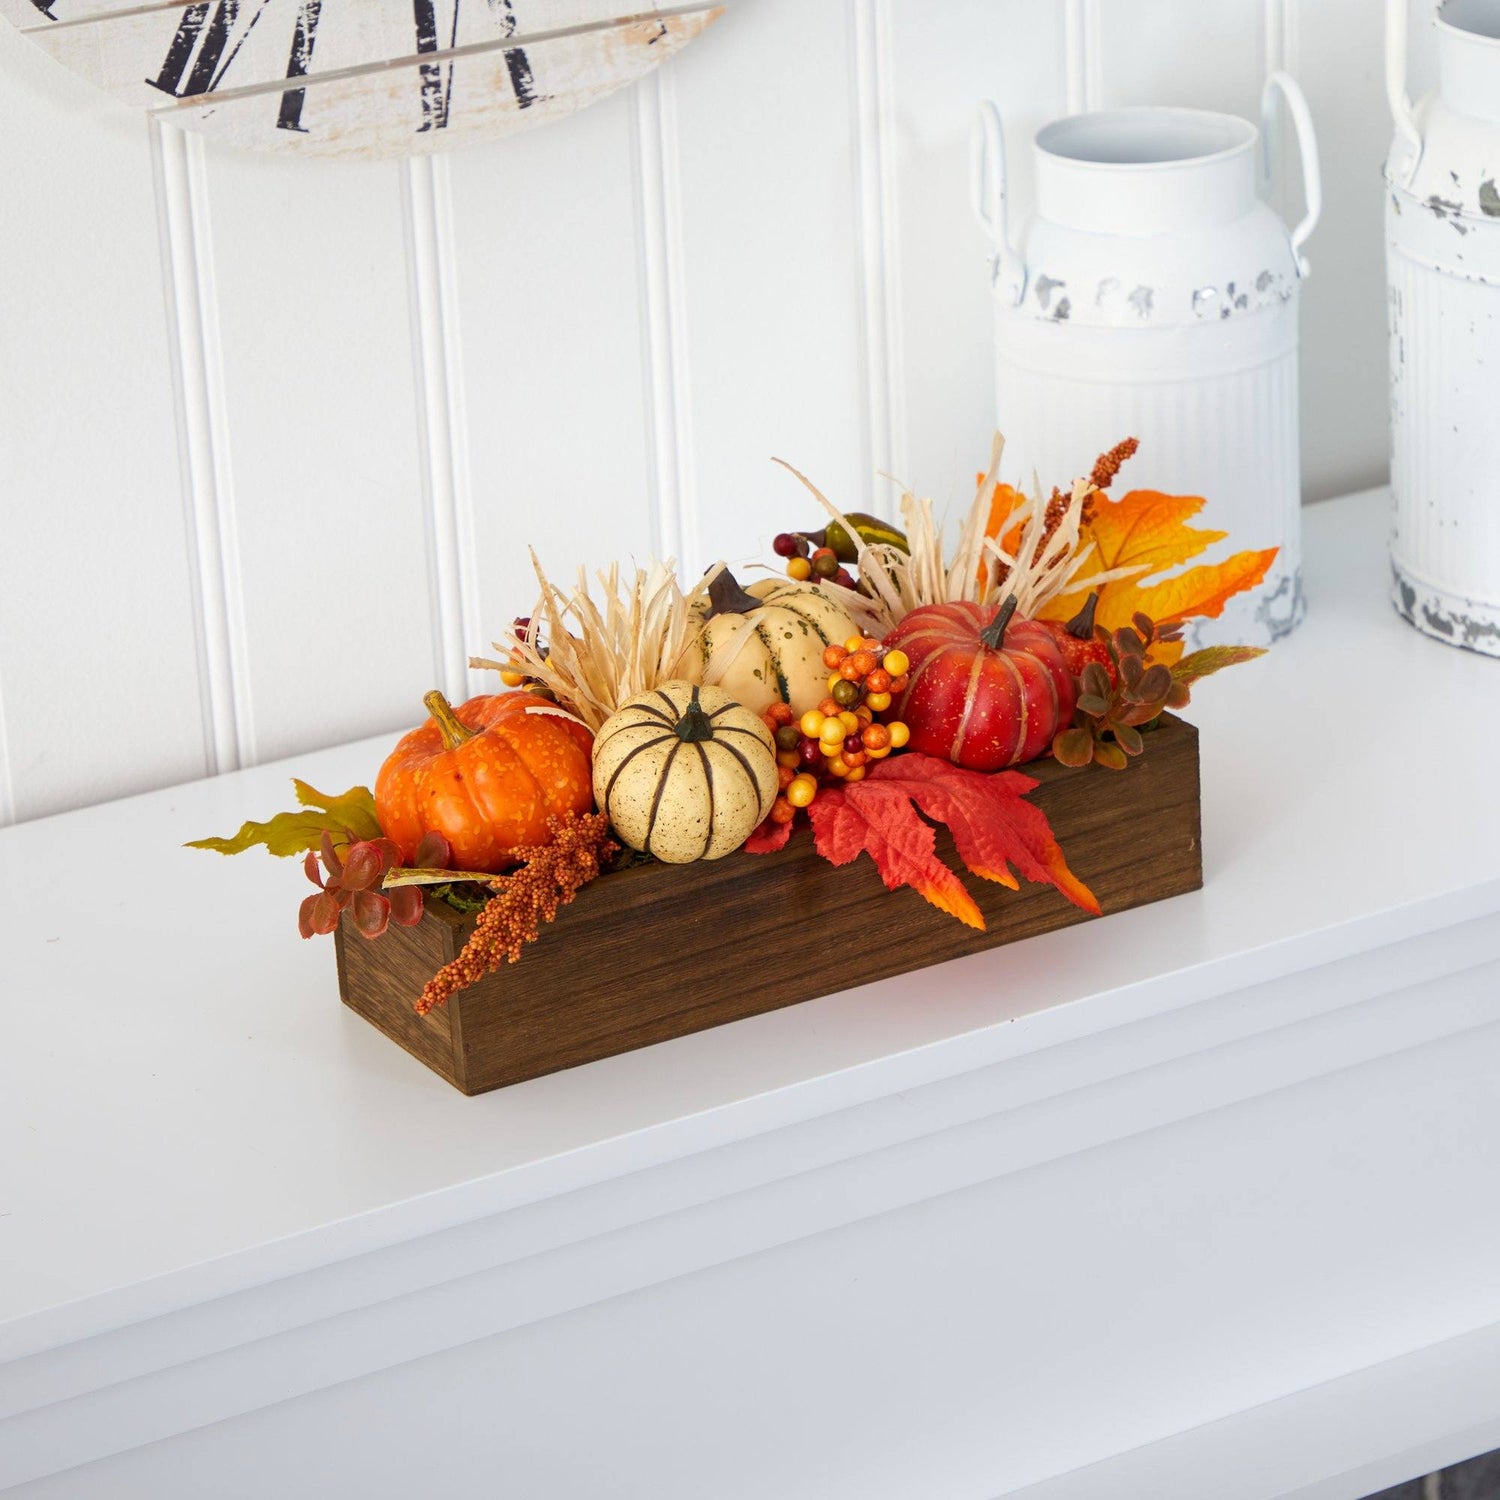 16” Harvest Pumpkin and Berries Artificial Arrangement in Wood Vase